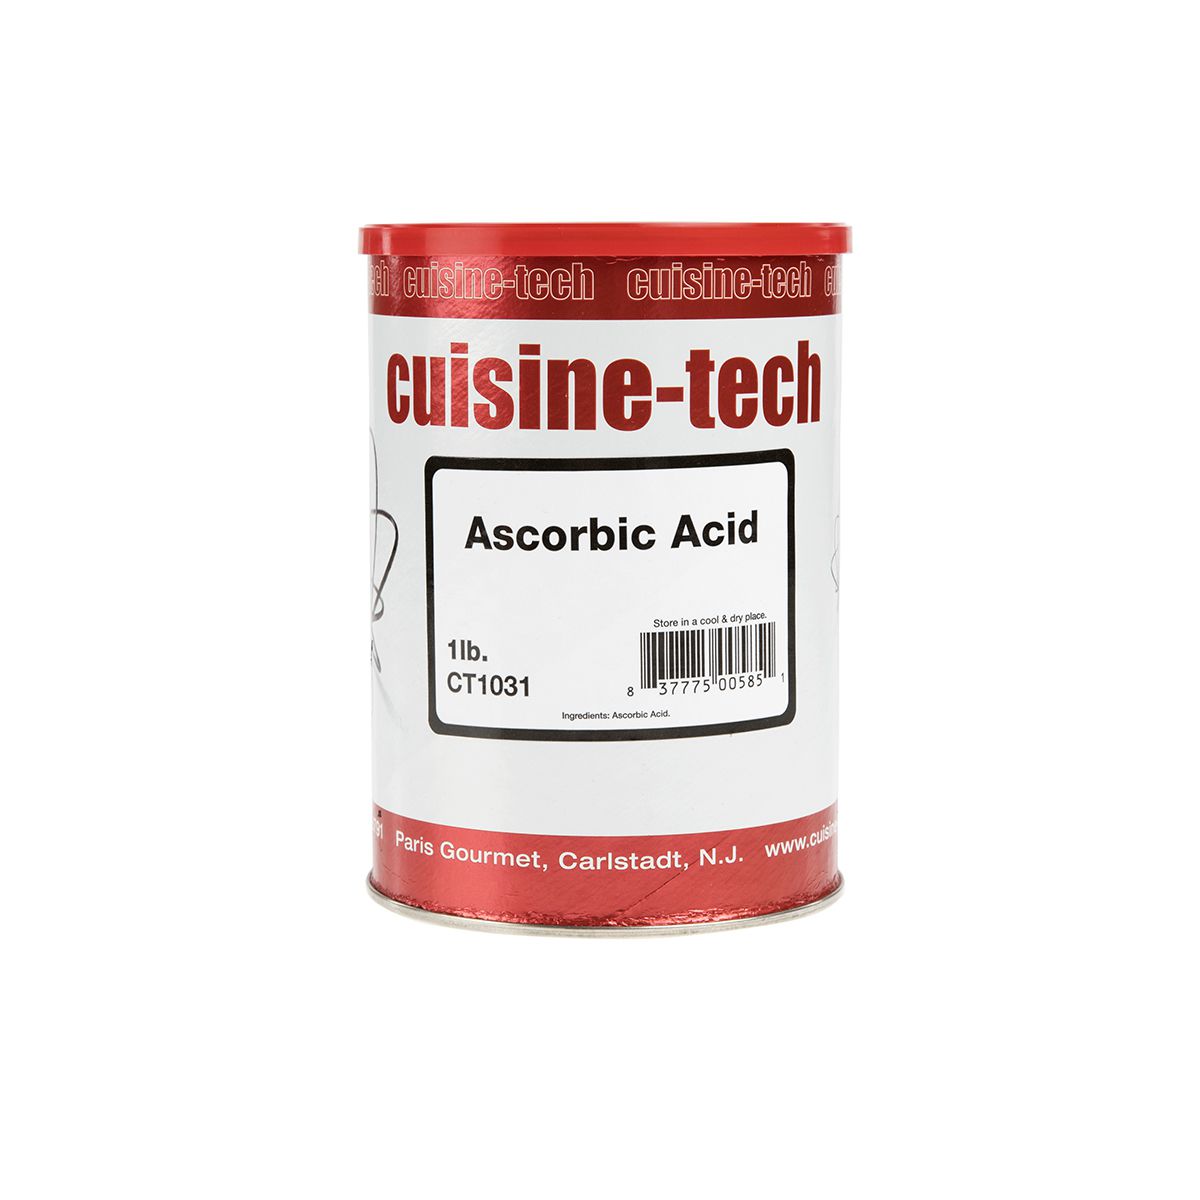 Cuisine Tech Ascorbic Acid